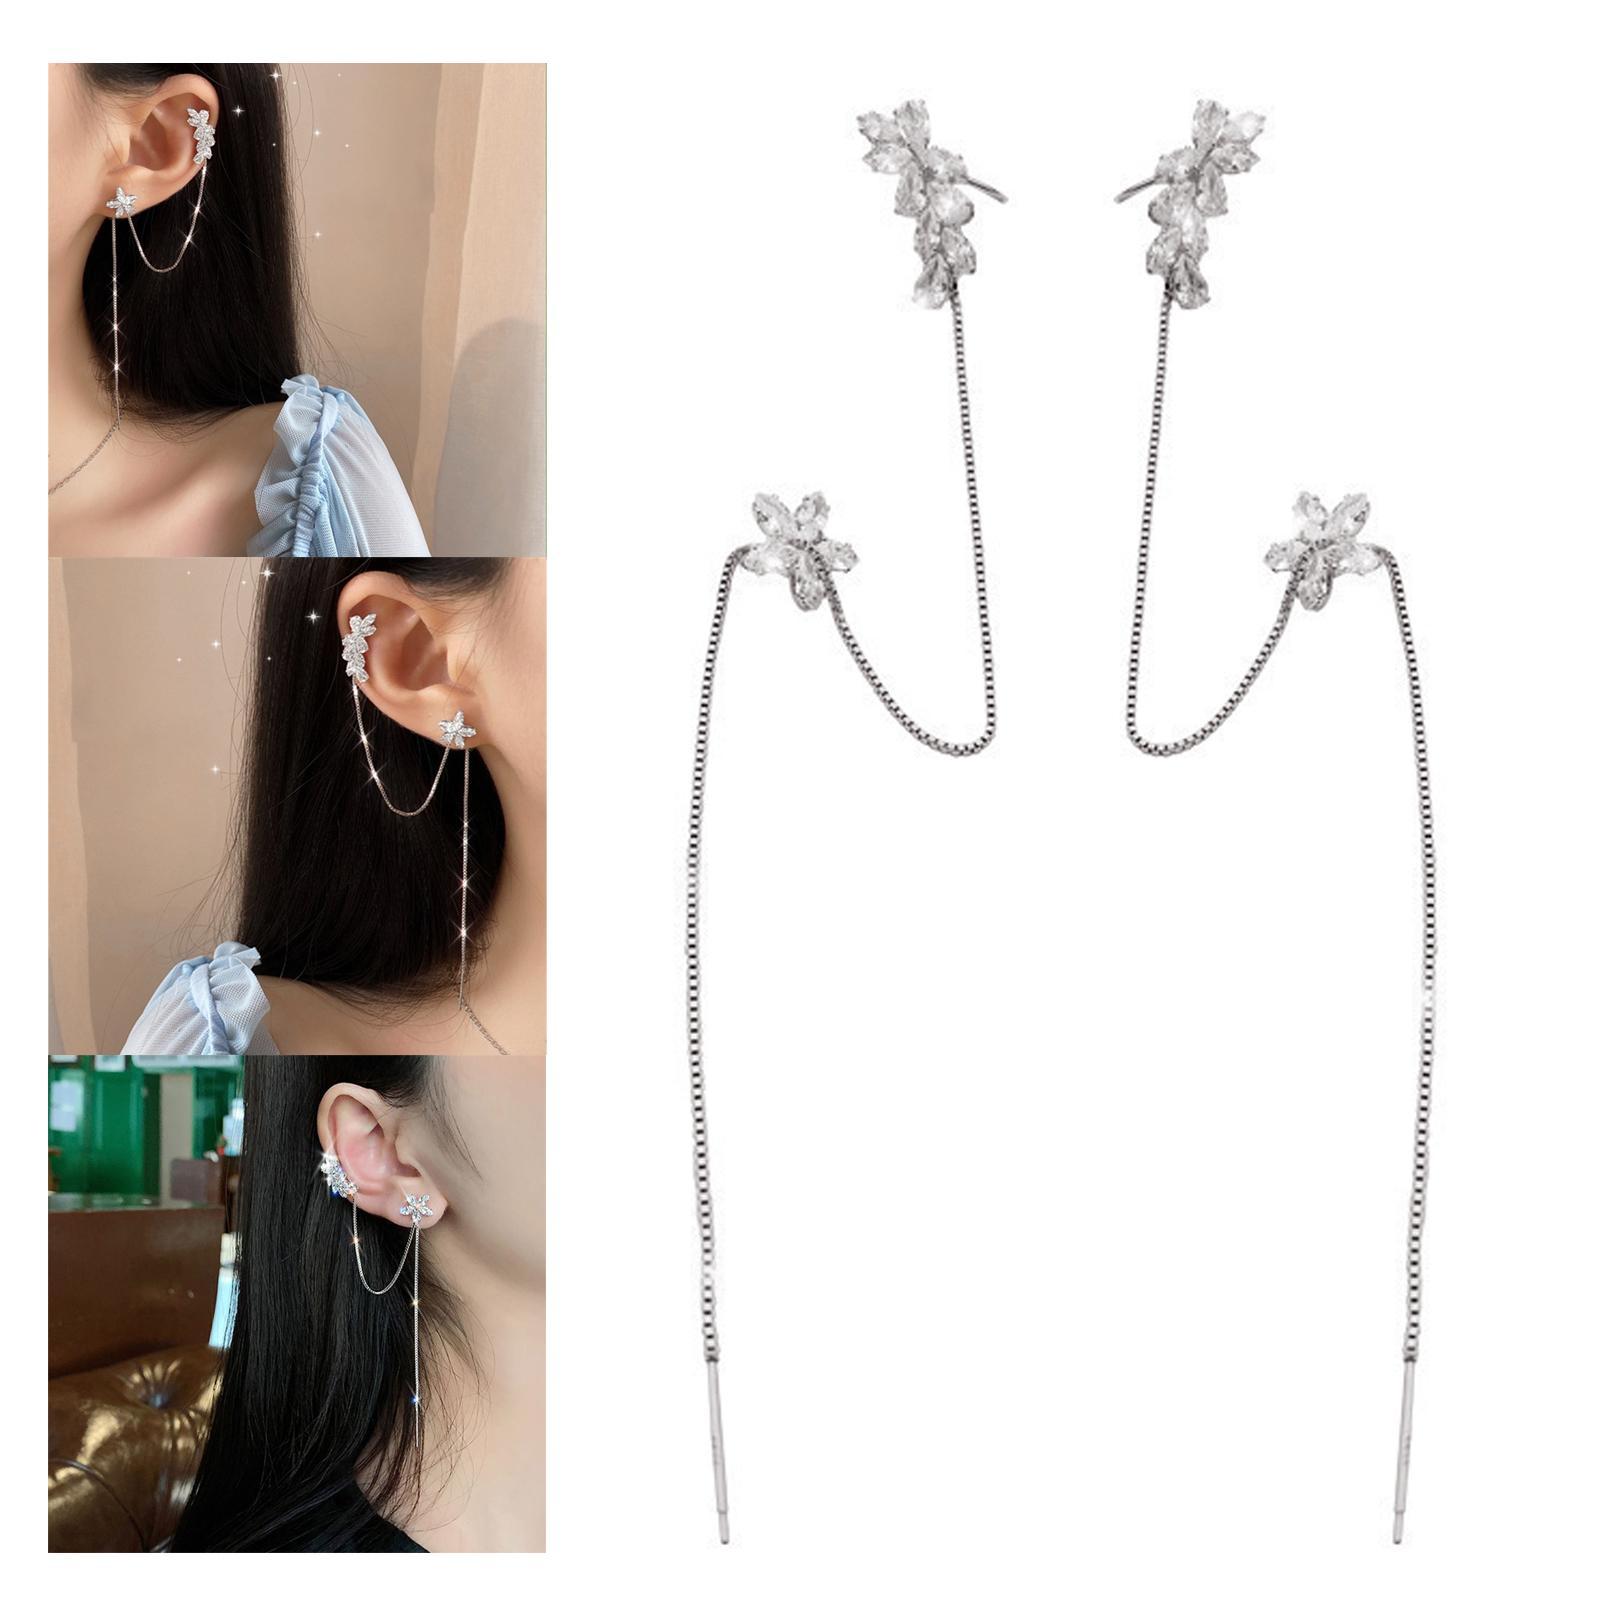 Threader Earrings Gorgeous Long Chain Earrings for Women Girl Party Birthday